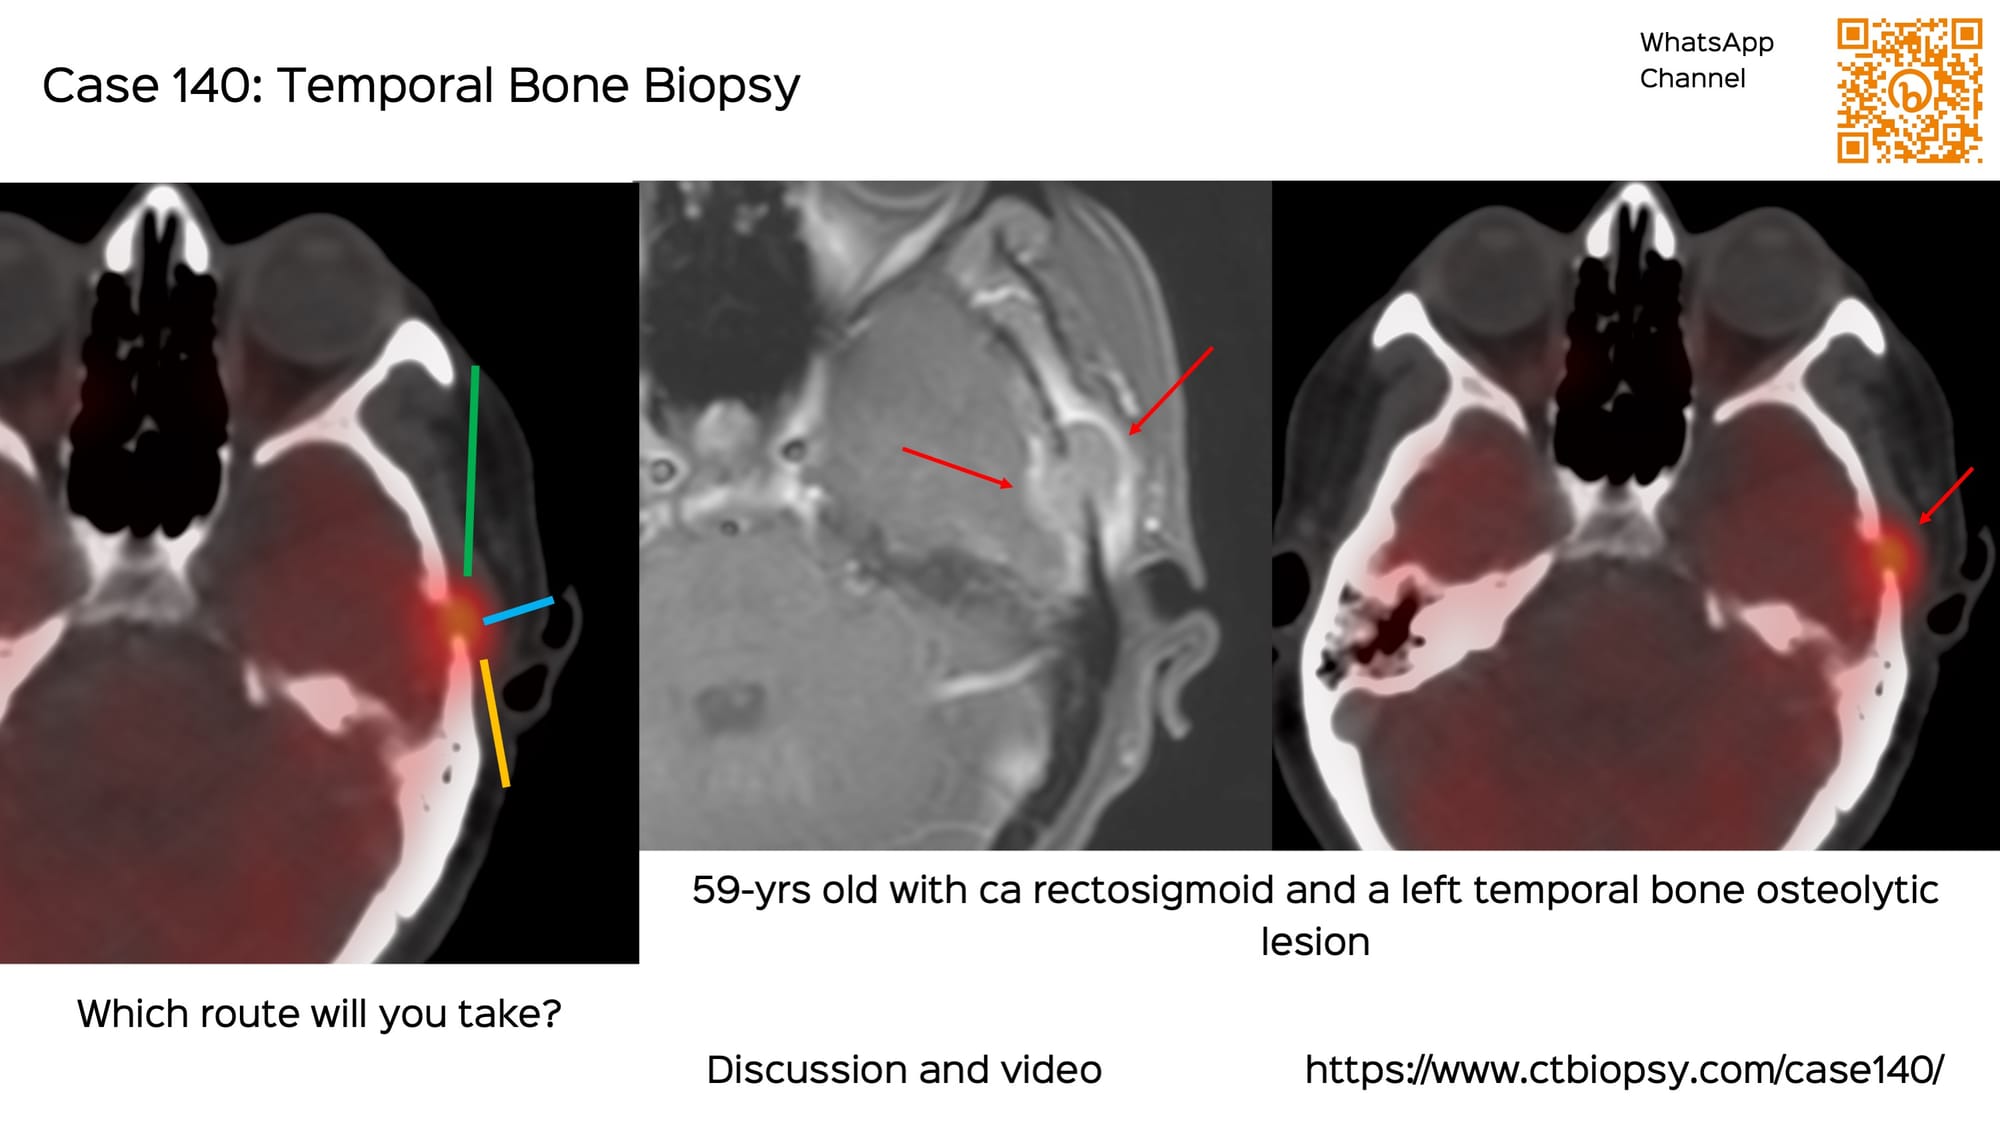 Case 140: Temporal Bone Biopsy